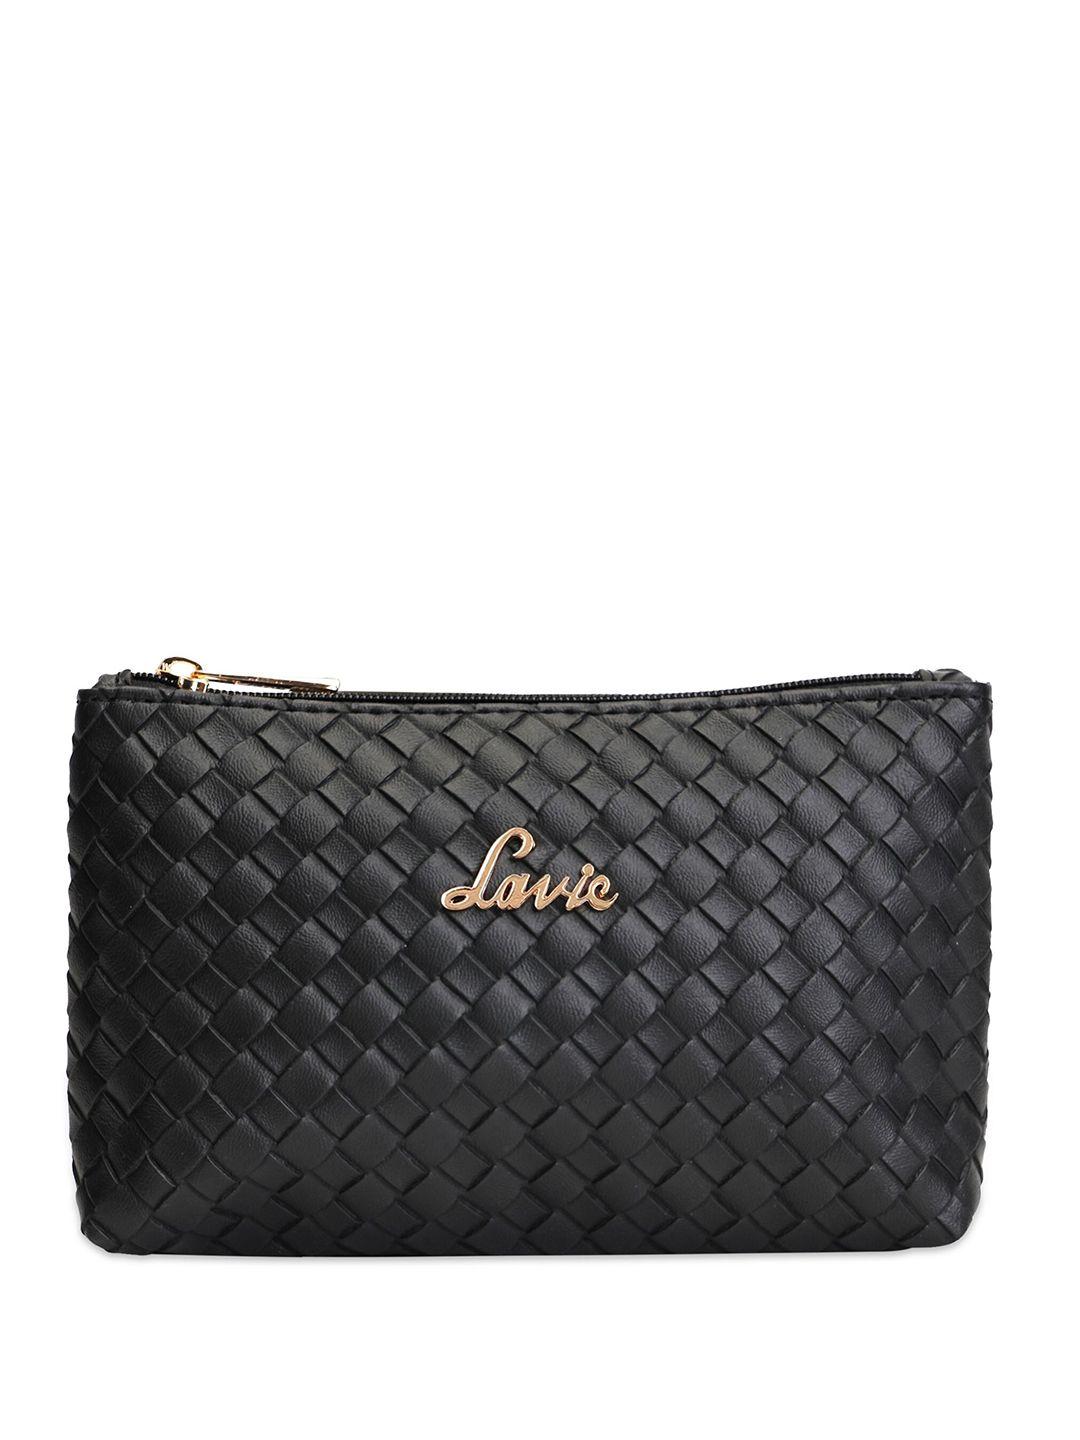 lavie-women-textured-purse-clutch